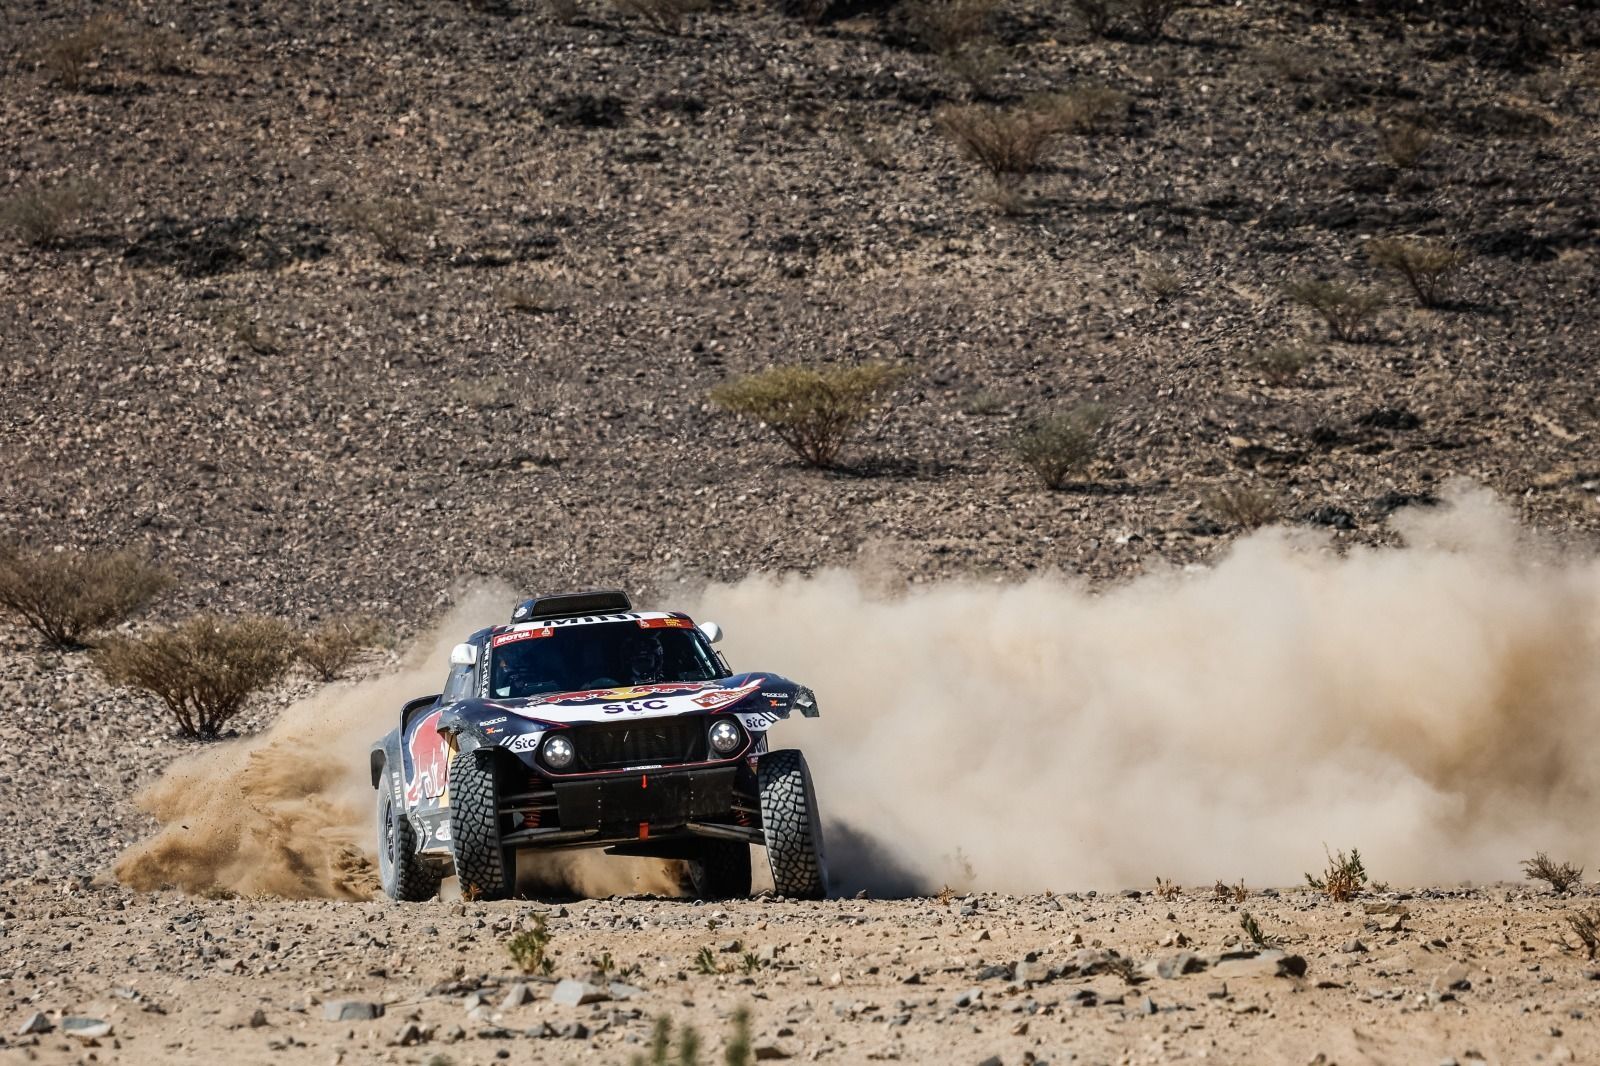 Carlos Sainz v Mini v 1. etapě Rallye Dakar 2021